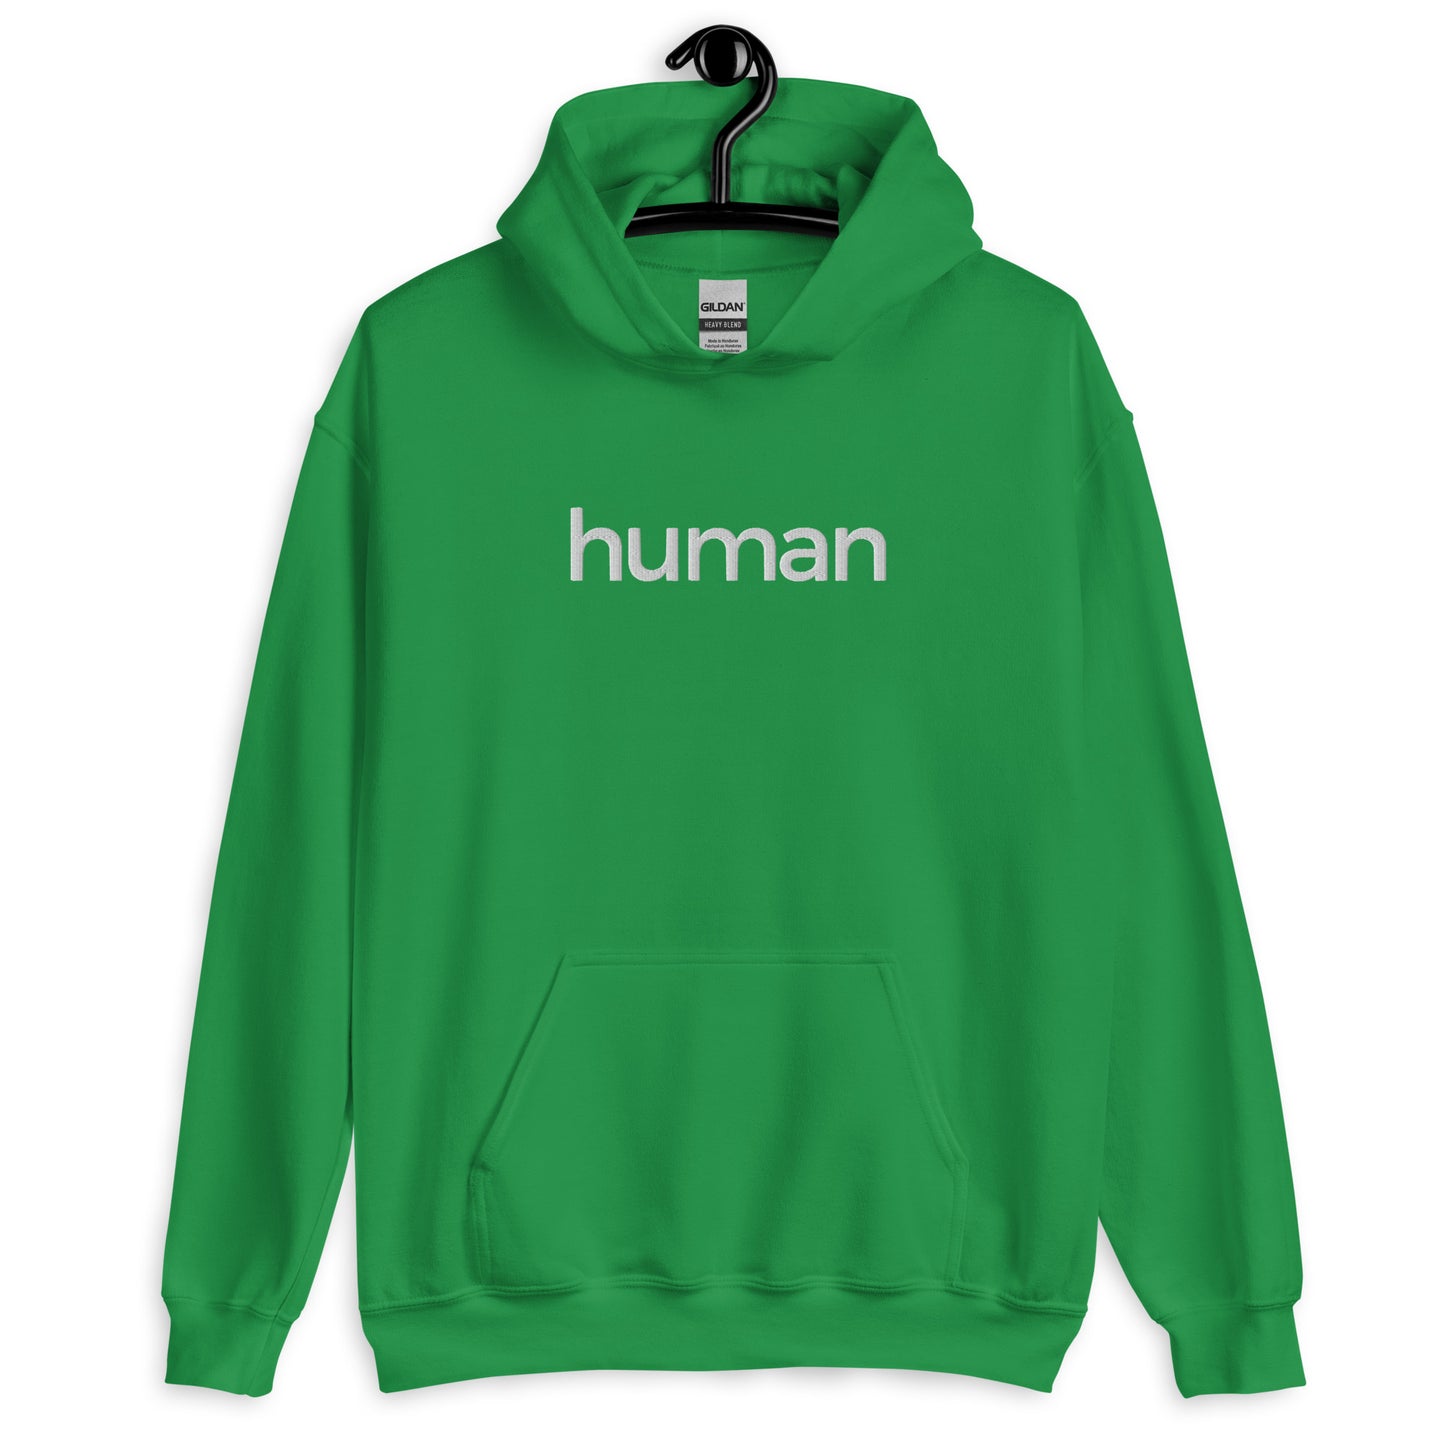 Human - Hoodie